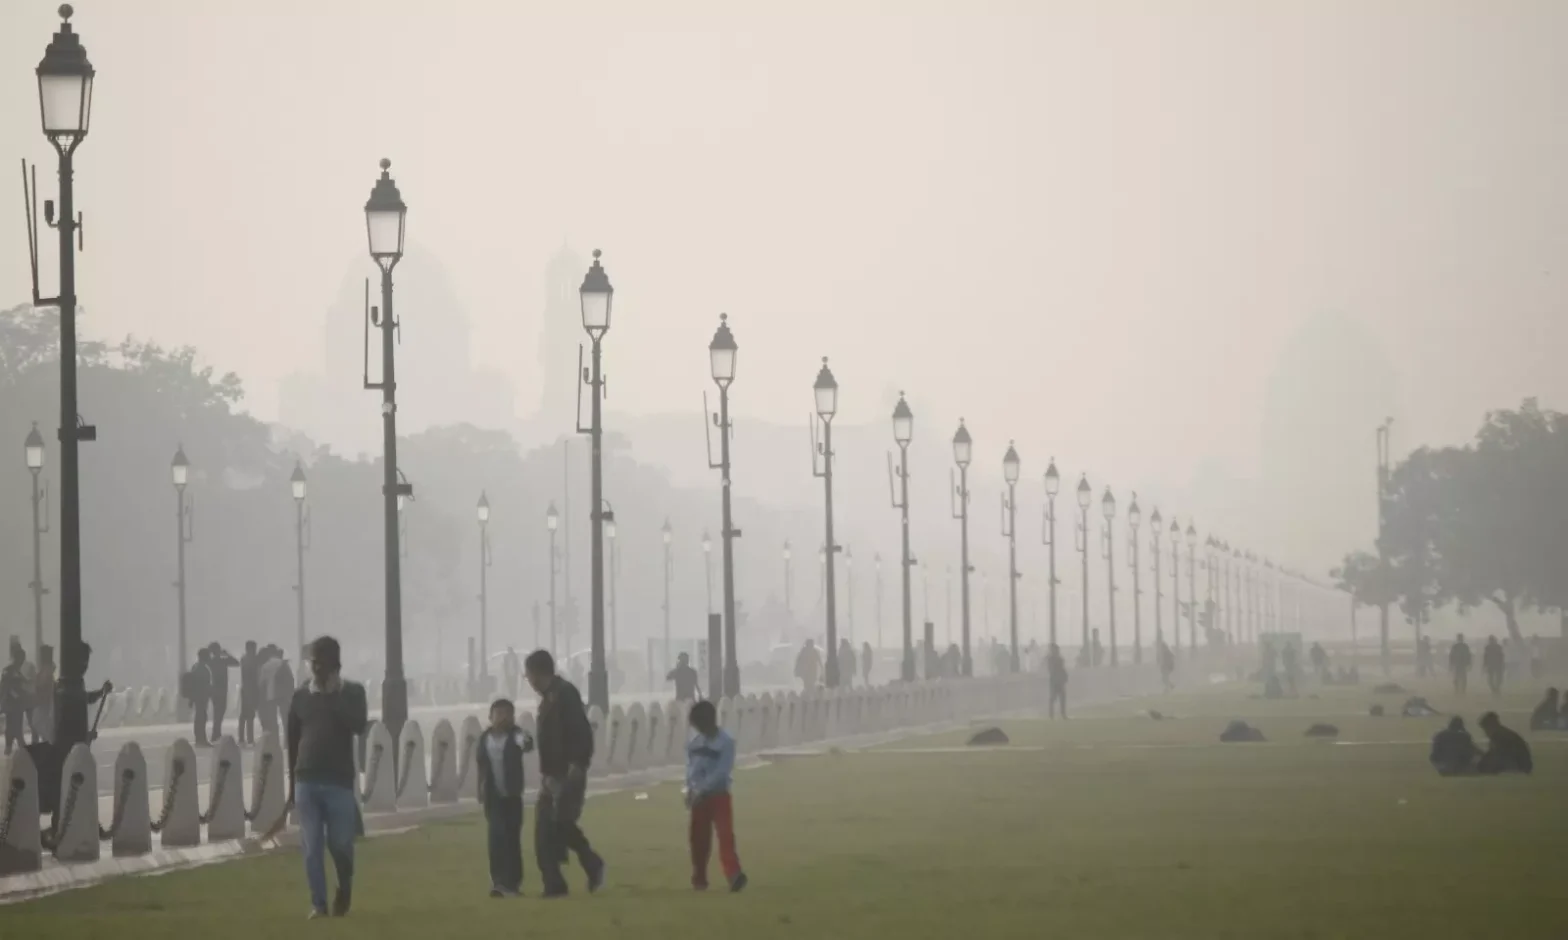 दिल्ली में न्यूनतम तापमान 7.4 डिग्री सेल्सियस, एक्यूआई 'बहुत खराब' श्रेणी में